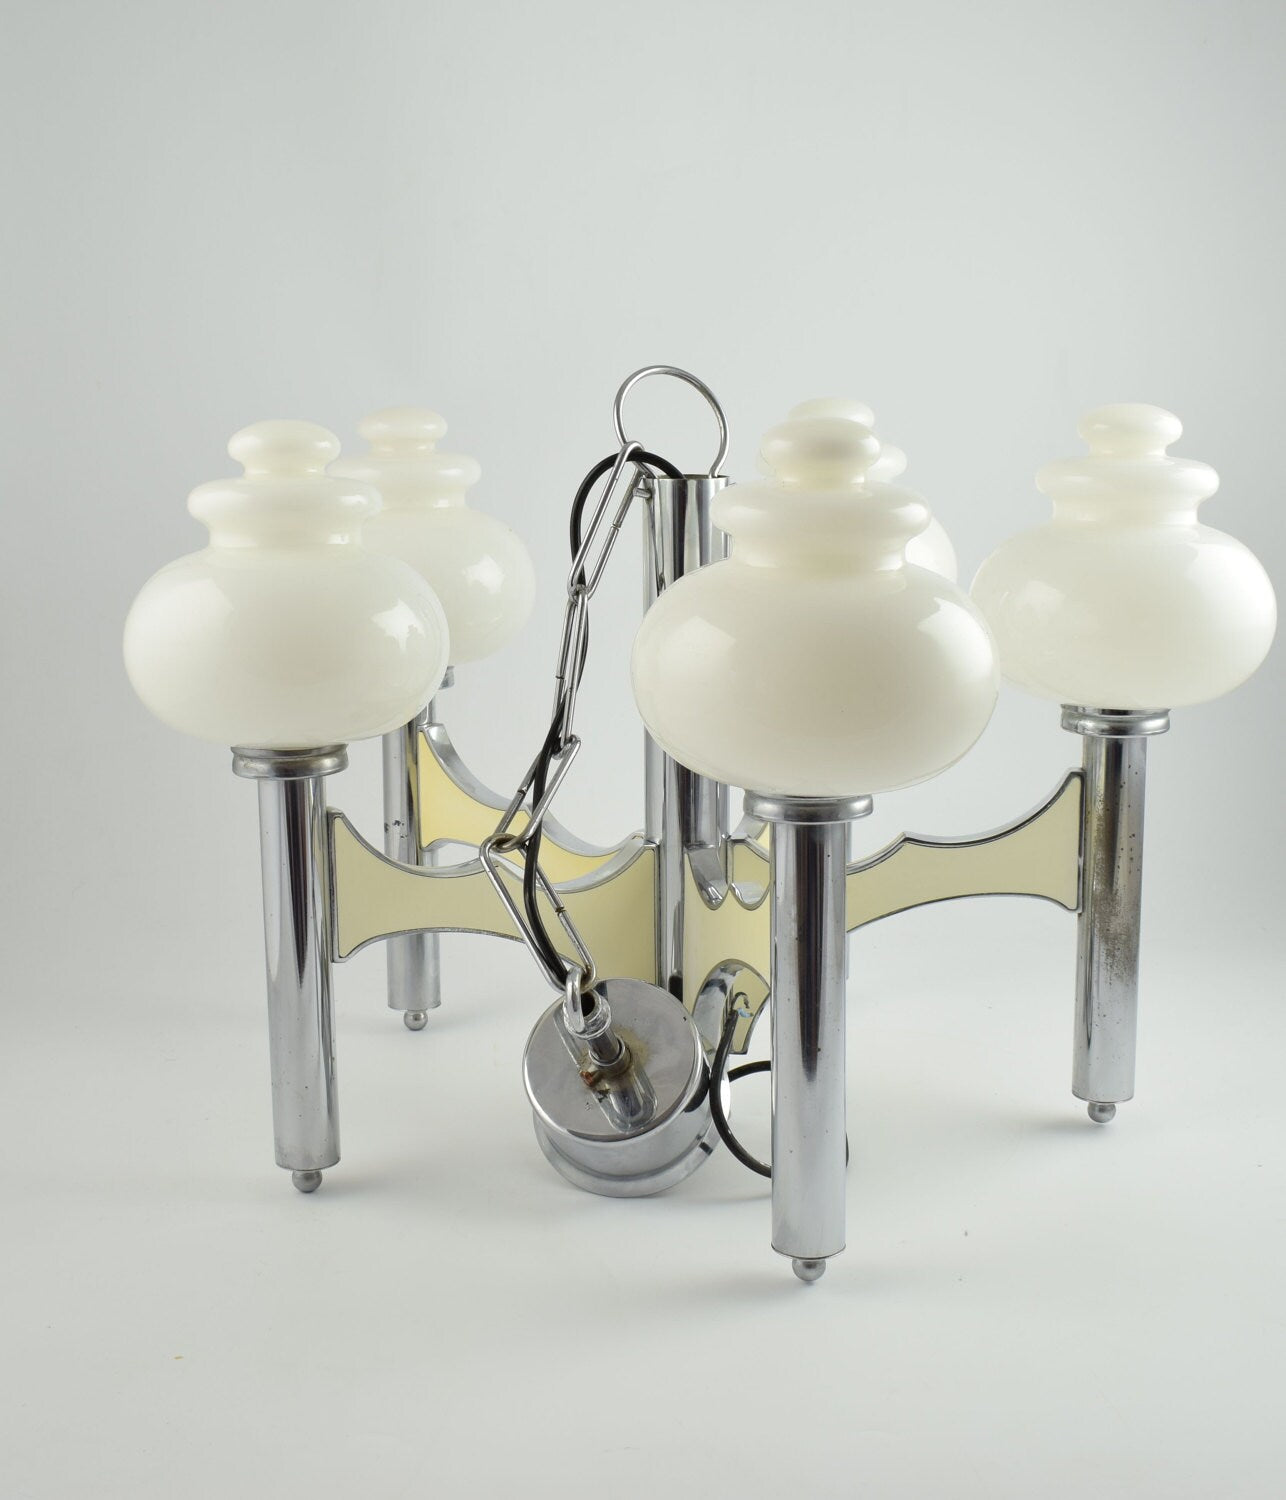 Lámpara colgante Sciolari, gran lámpara regencia italiana de cinco brazos en cromo y cristal blanco